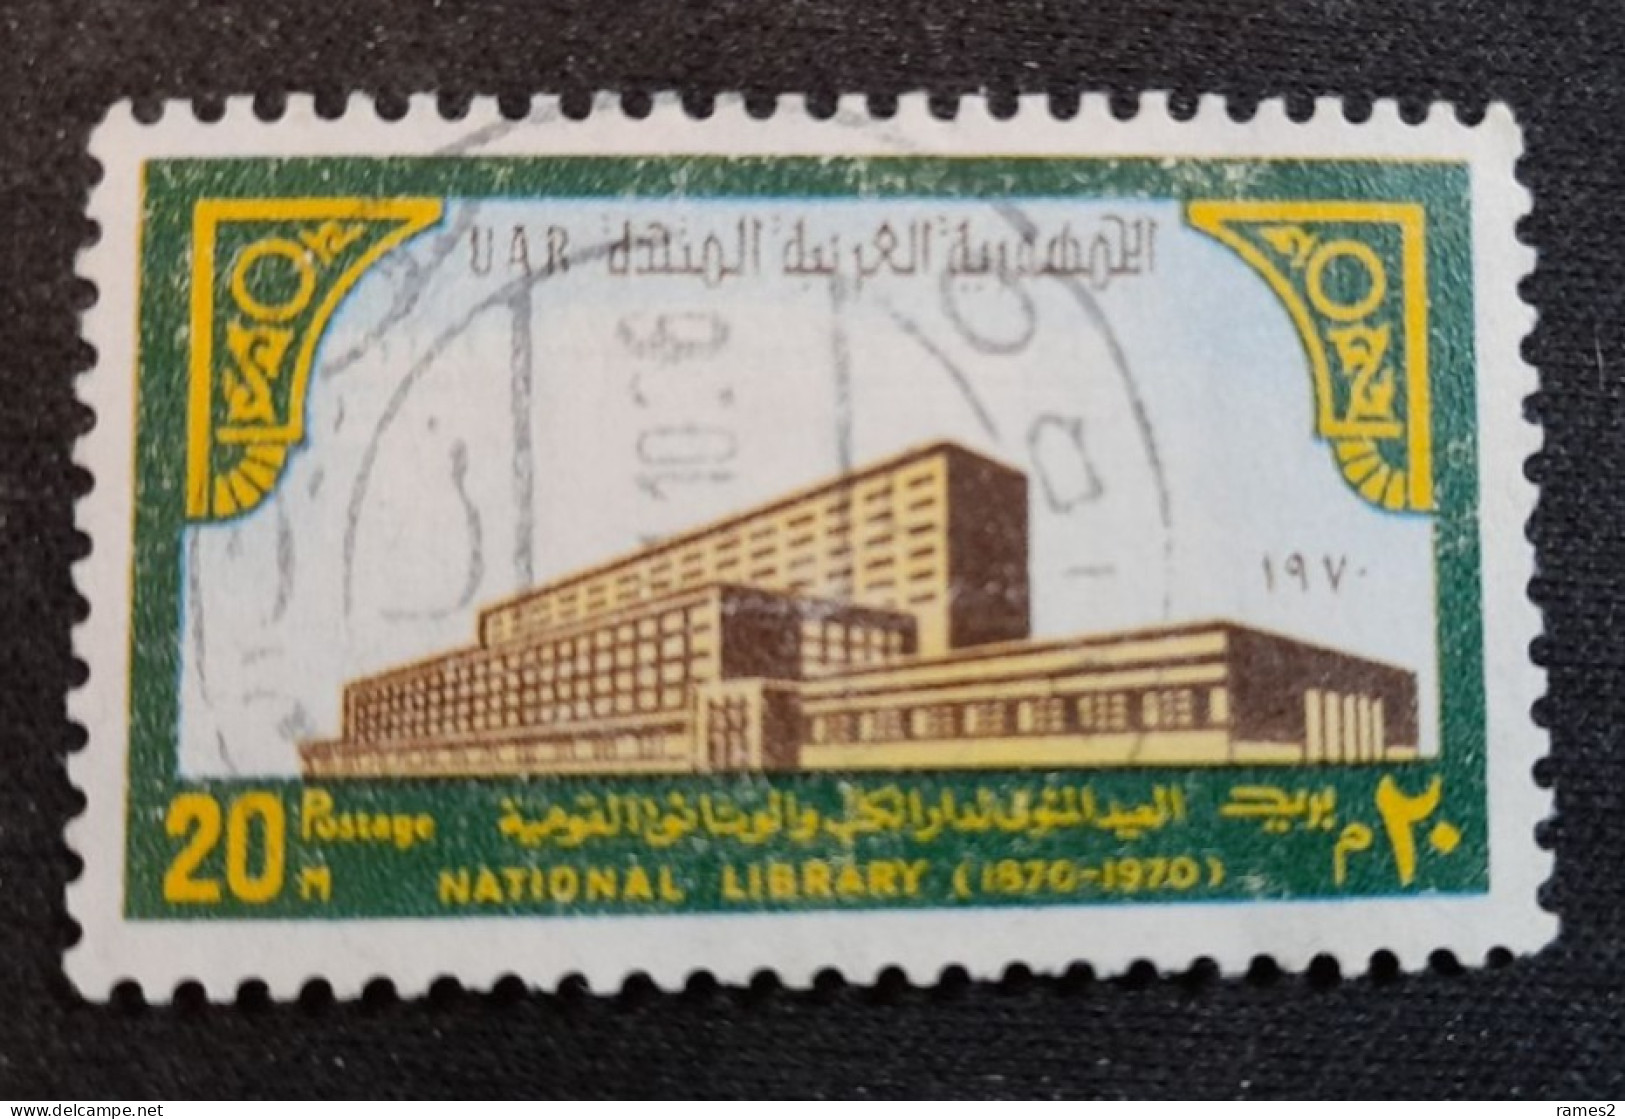 Egypte > 1953-... République > 1960-69 > Oblitérés N° 840 - Usati